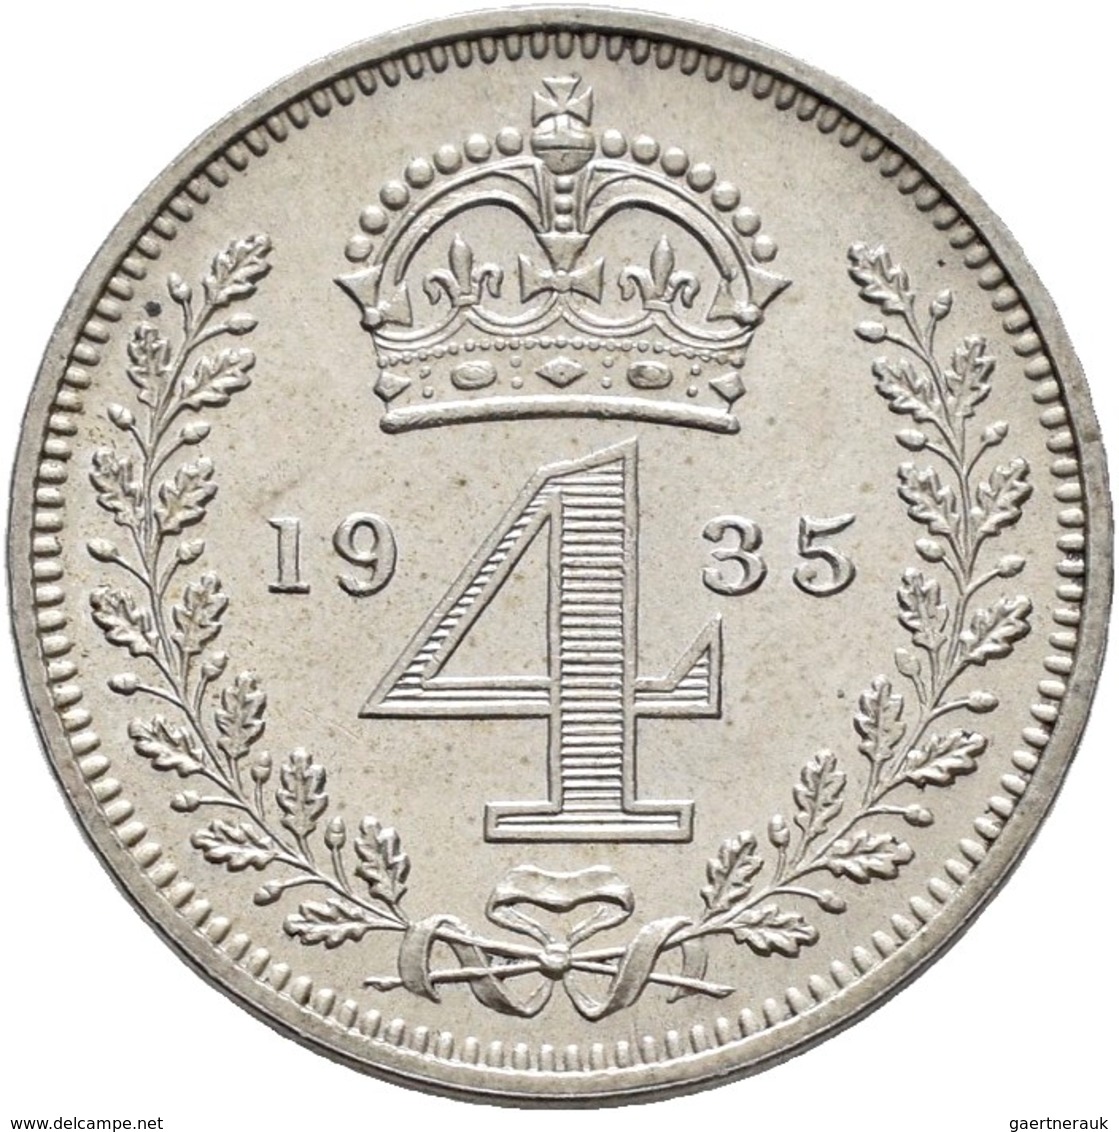 Großbritannien: Georg V. 1910-1936: 3 x Maundy Set 1,2,3,4 Pence 1911, 1923, 1935, vorzüglich, vorzü